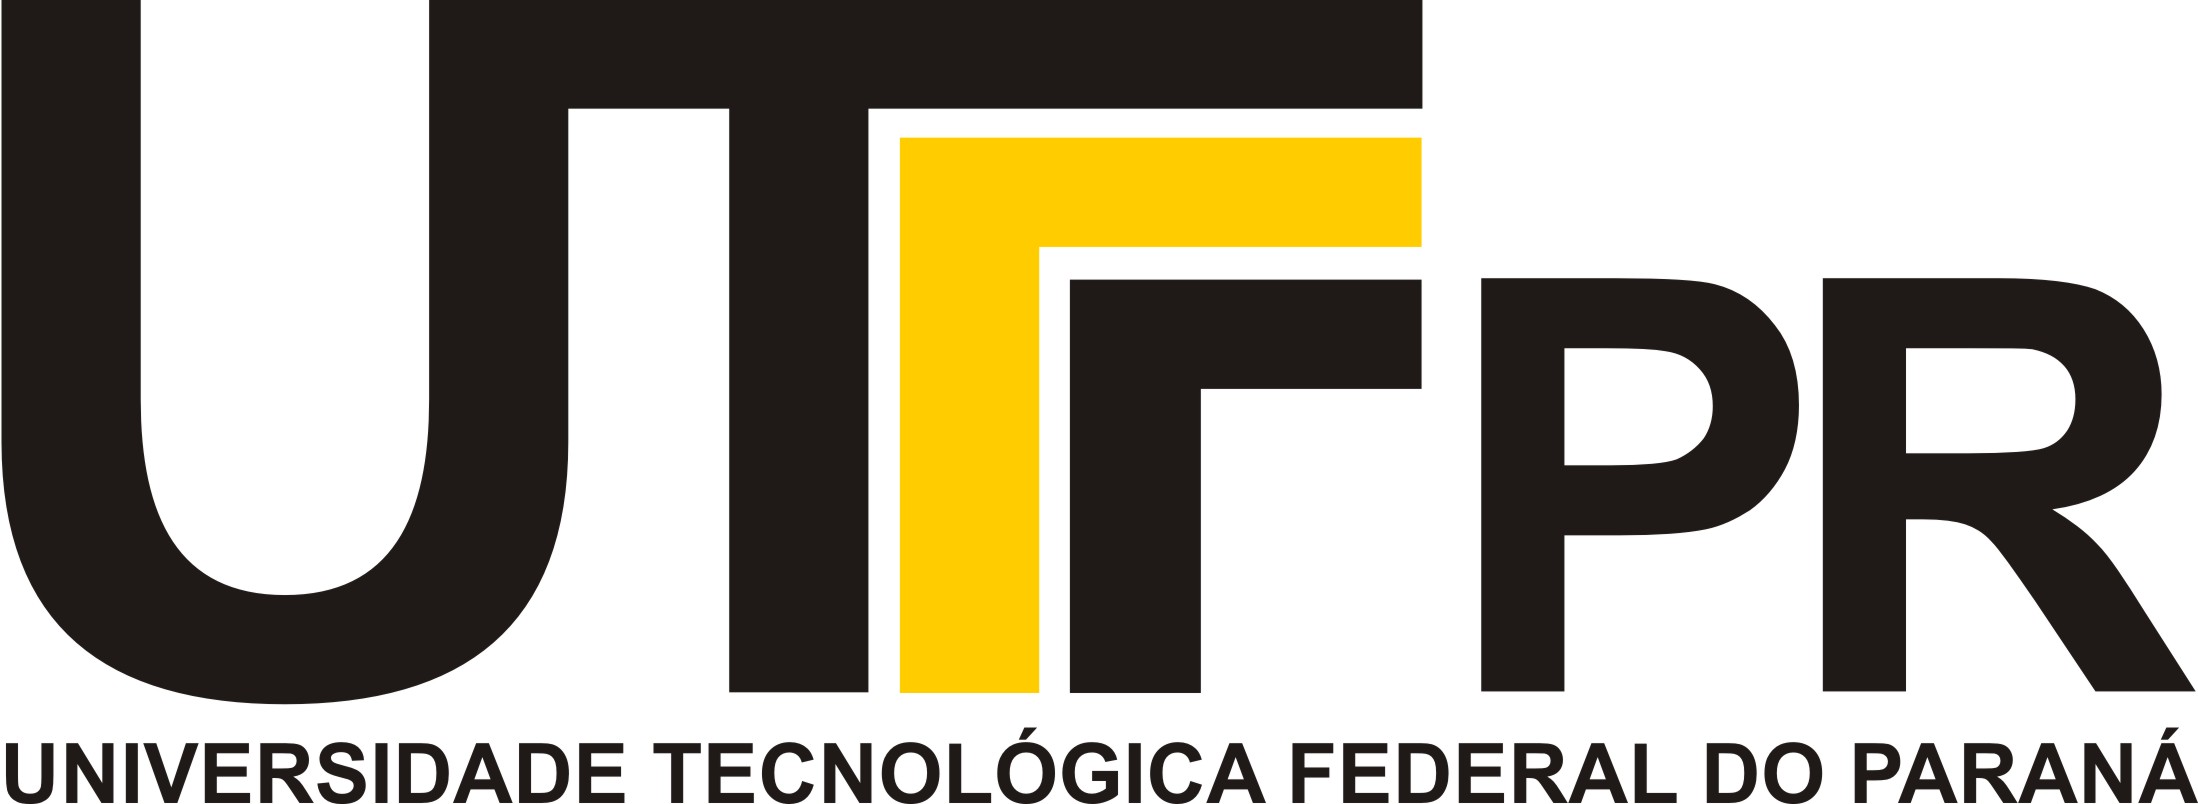 logo UTFPR